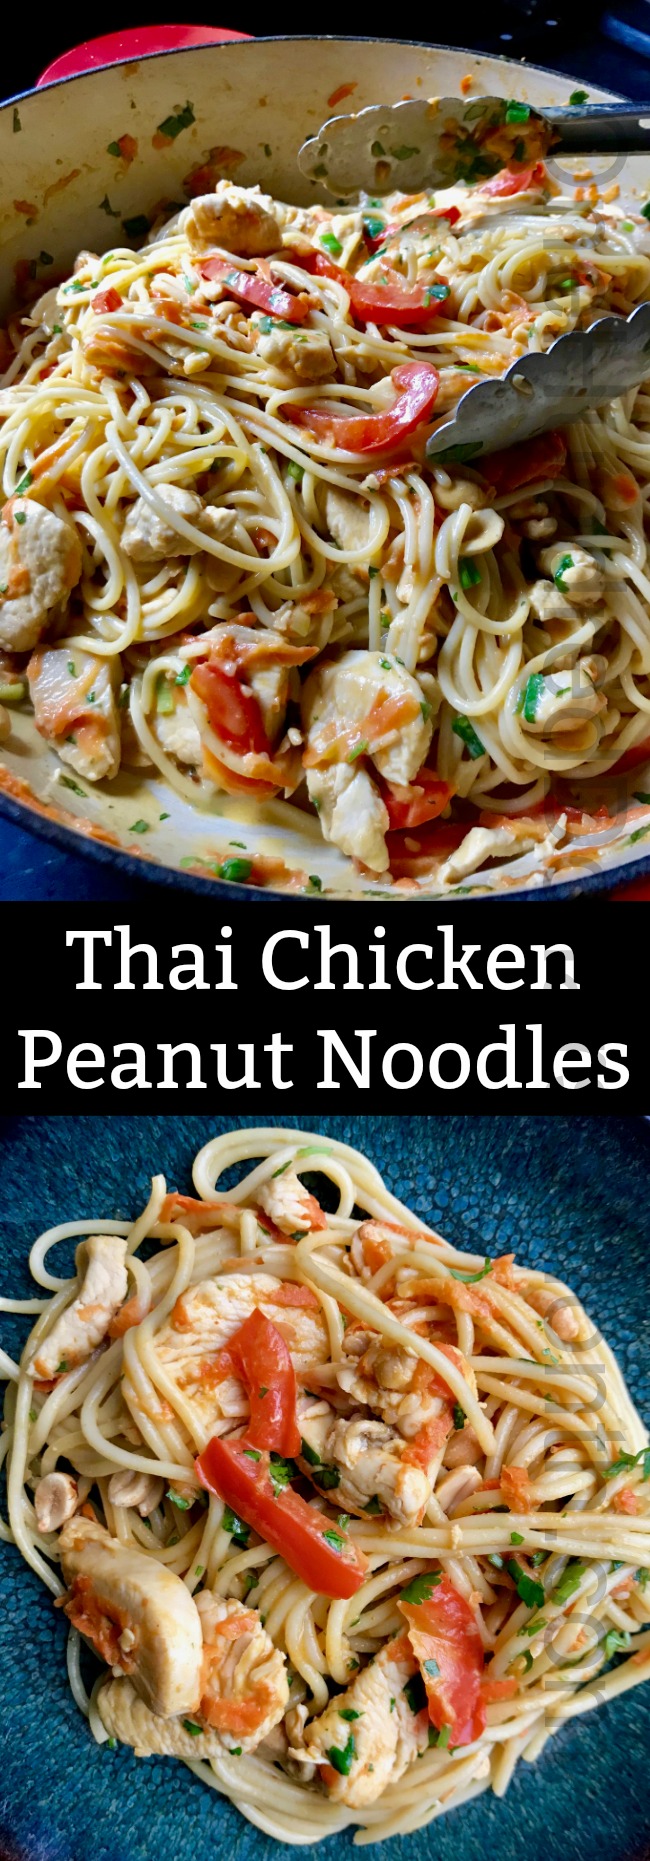 Thai Chicken Peanut Noodles